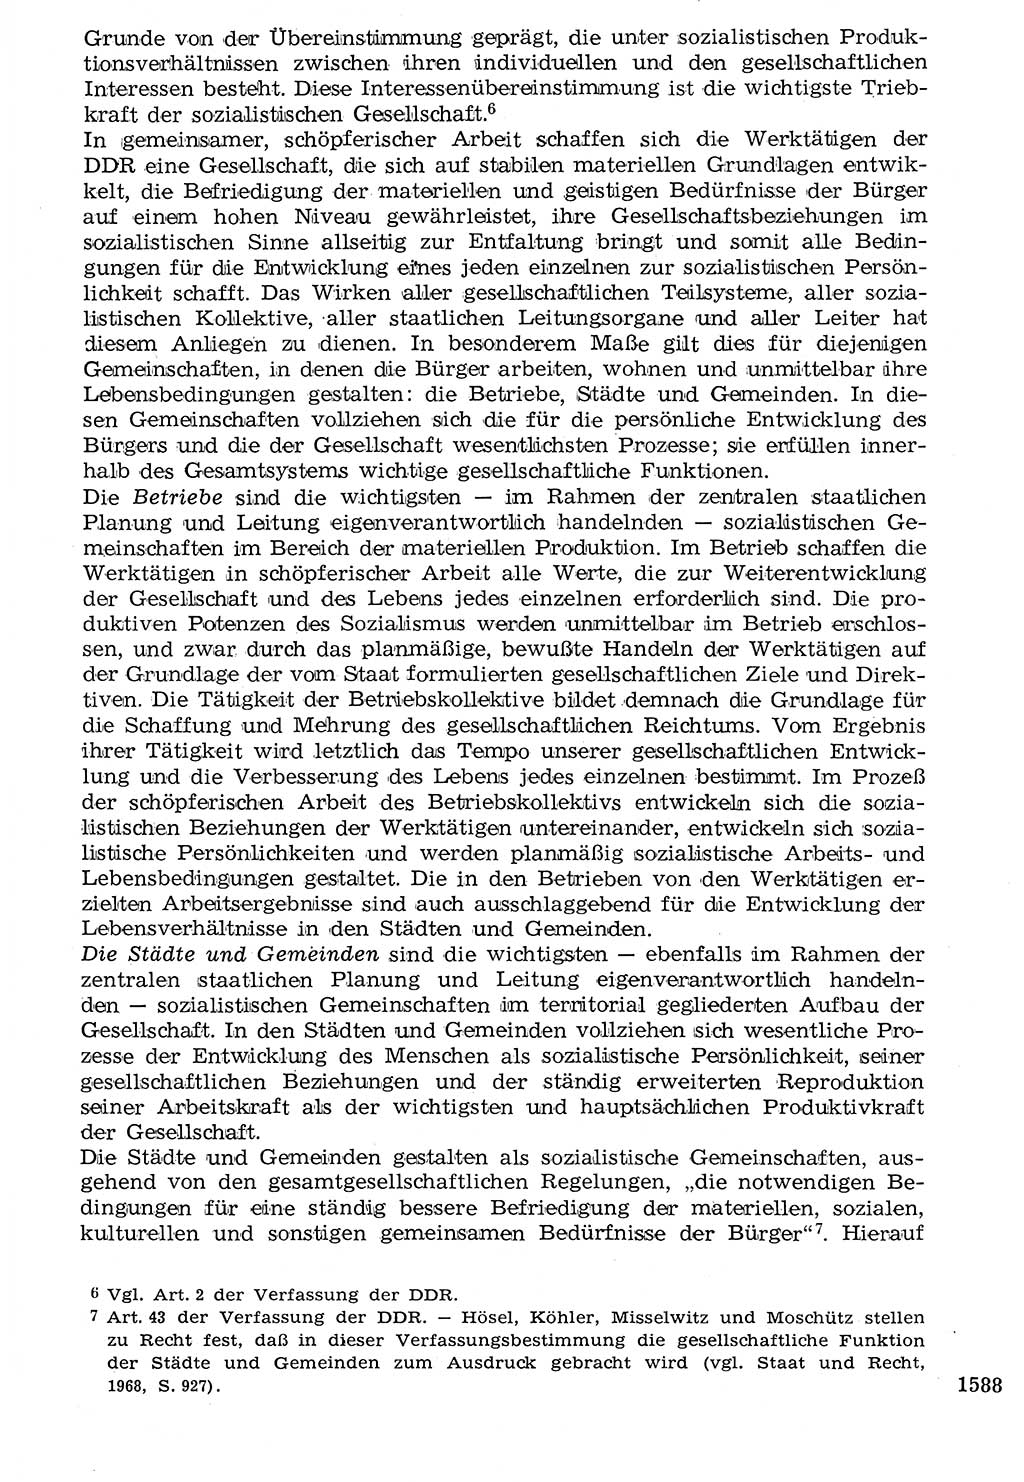 Staat und Recht (StuR), 17. Jahrgang [Deutsche Demokratische Republik (DDR)] 1968, Seite 1588 (StuR DDR 1968, S. 1588)